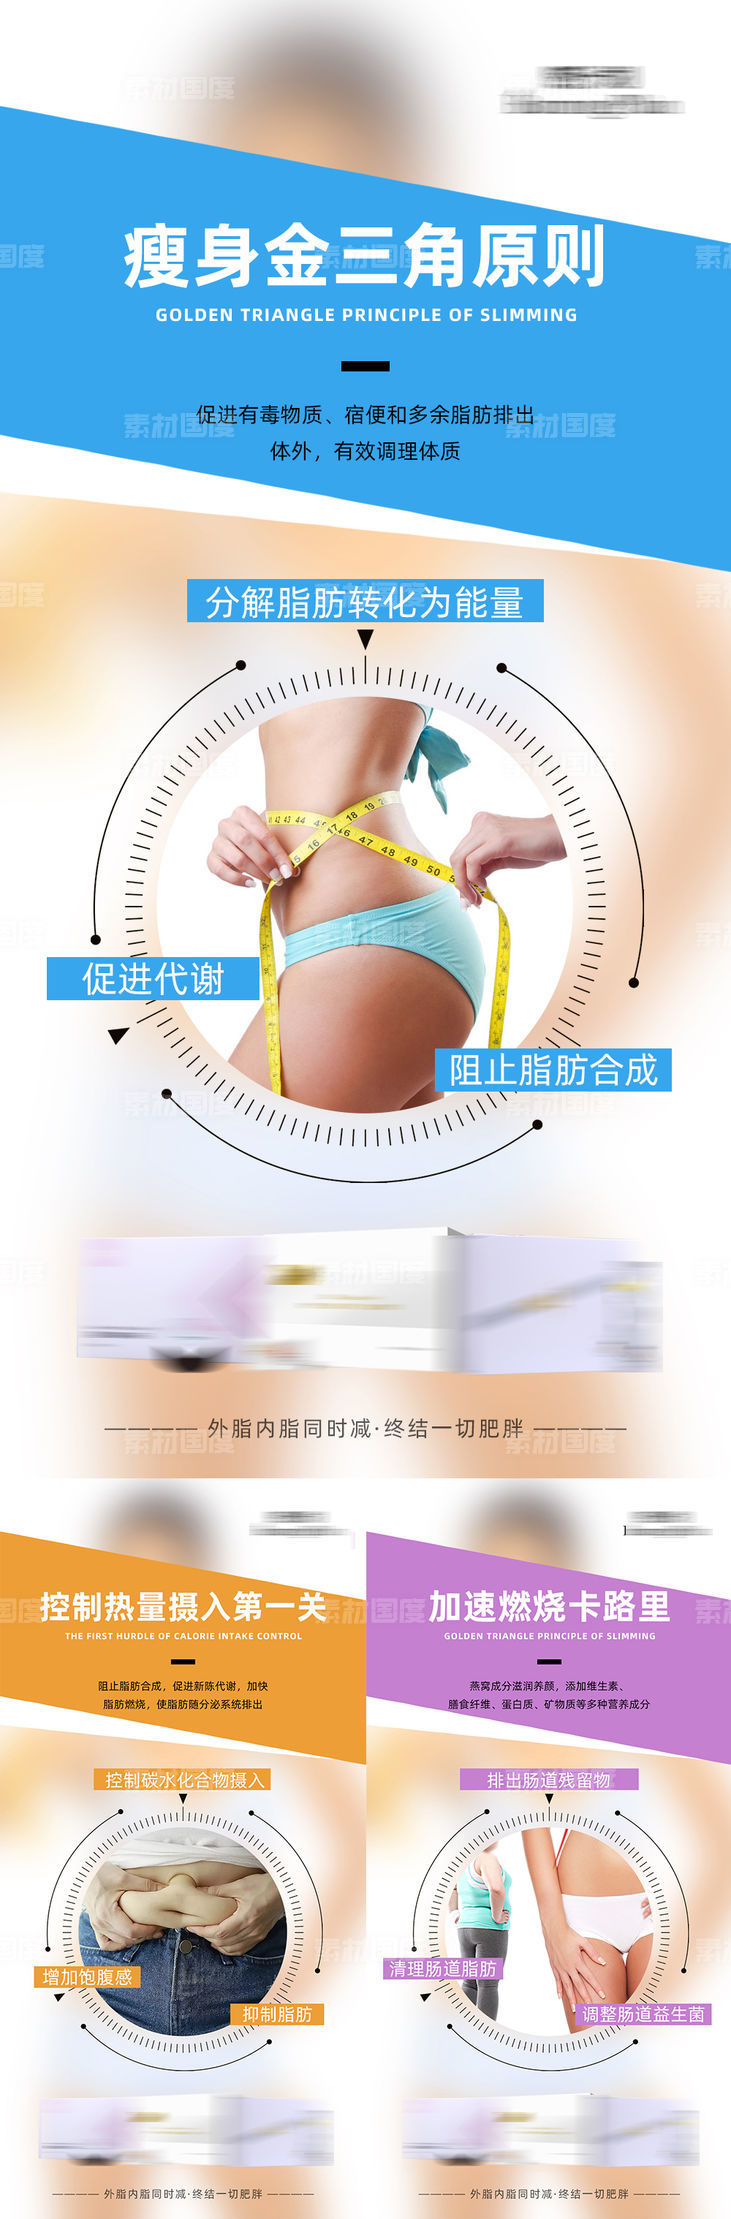 减肥瘦身功效宣传系列海报